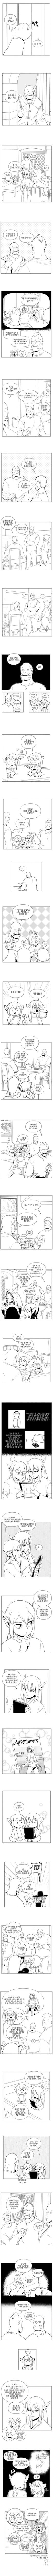 오크의 포로가 된 여사령관 만화 71화.manhwa